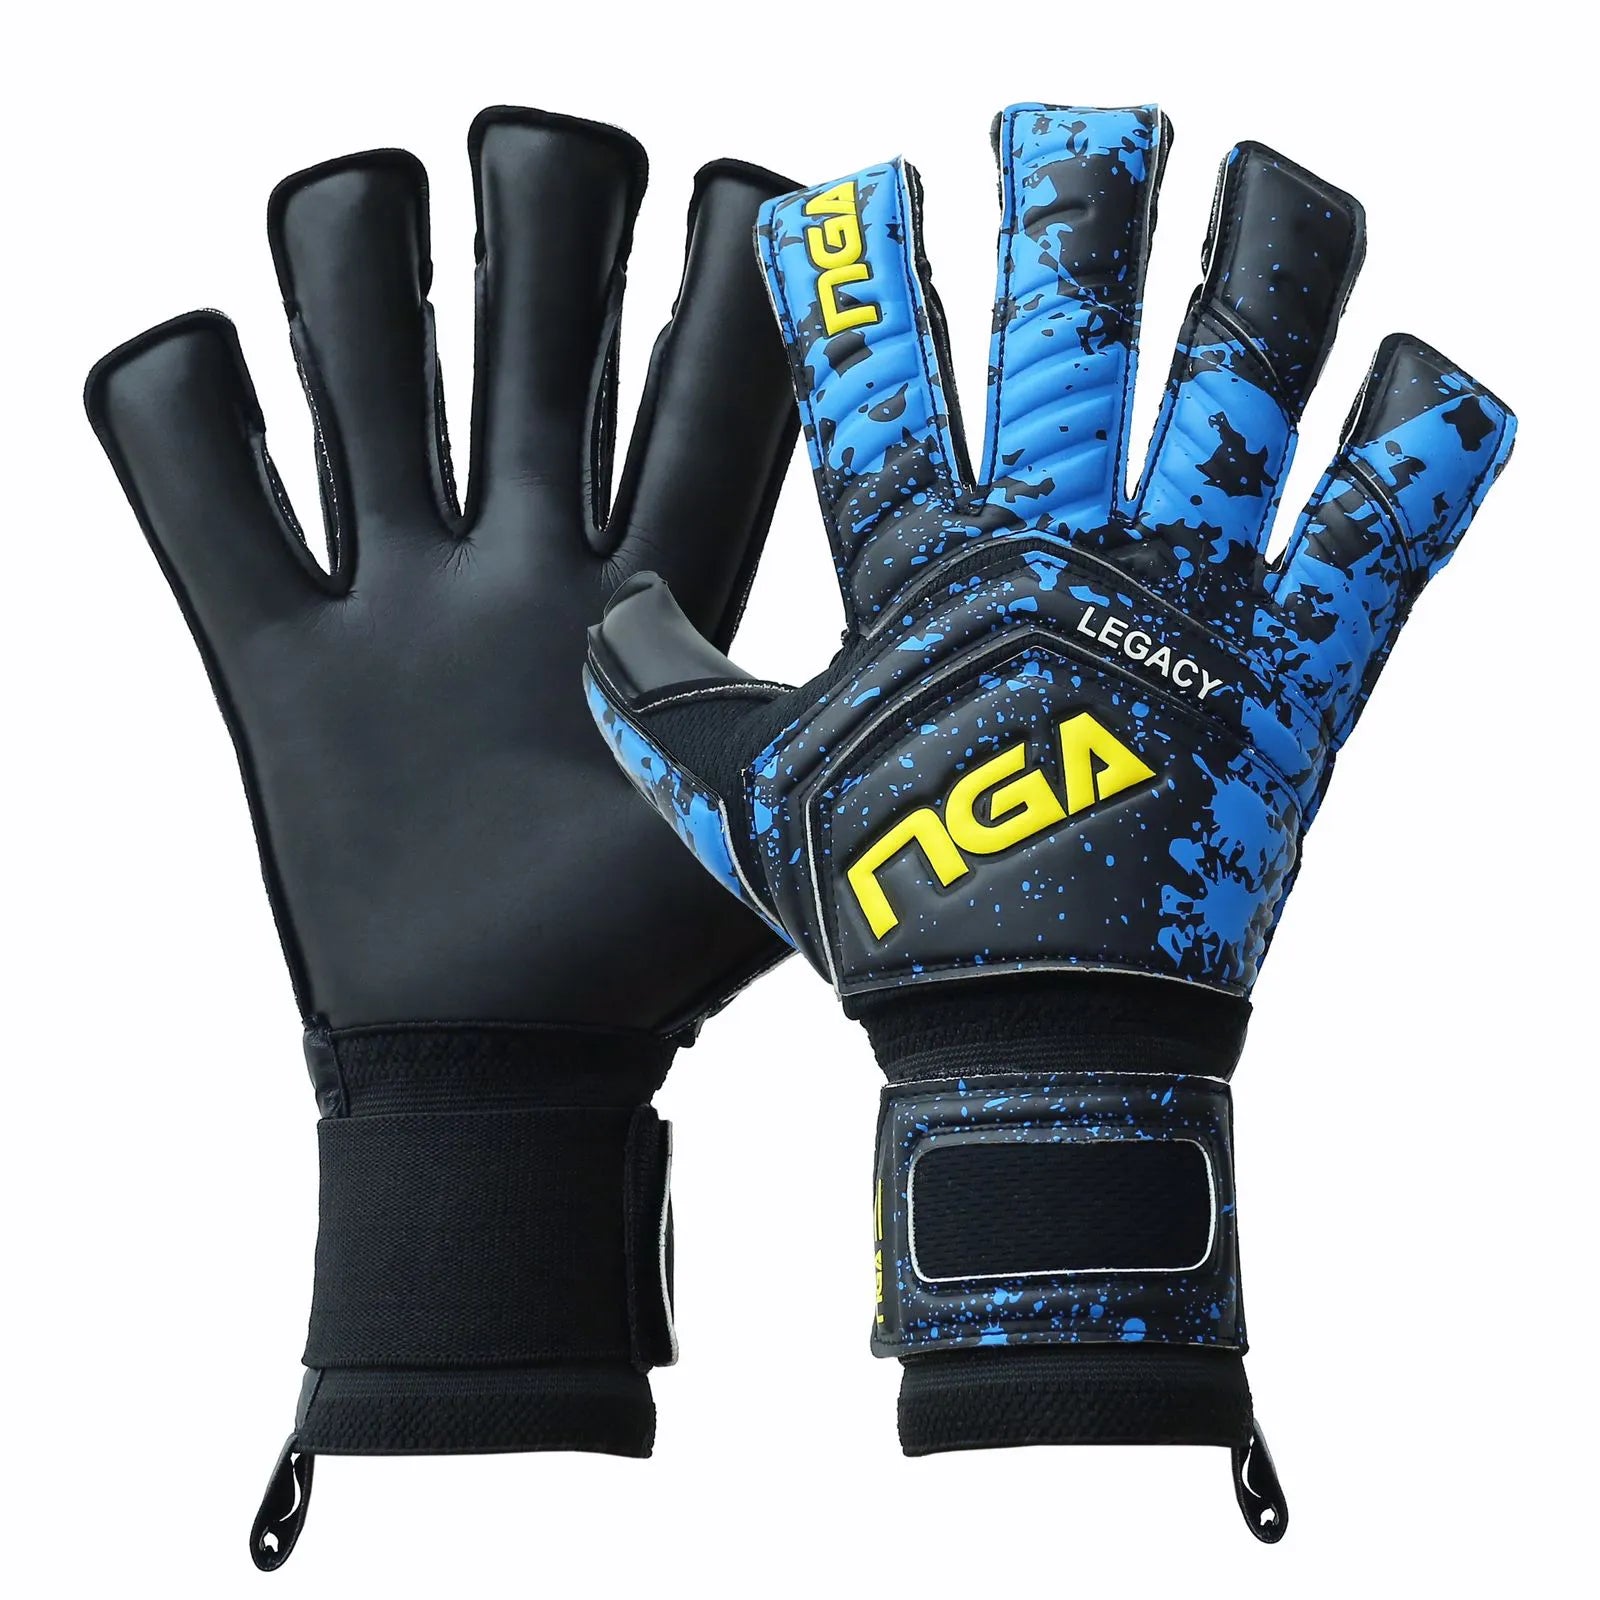 NGA Legacy Cyan Goalkeeper Glove